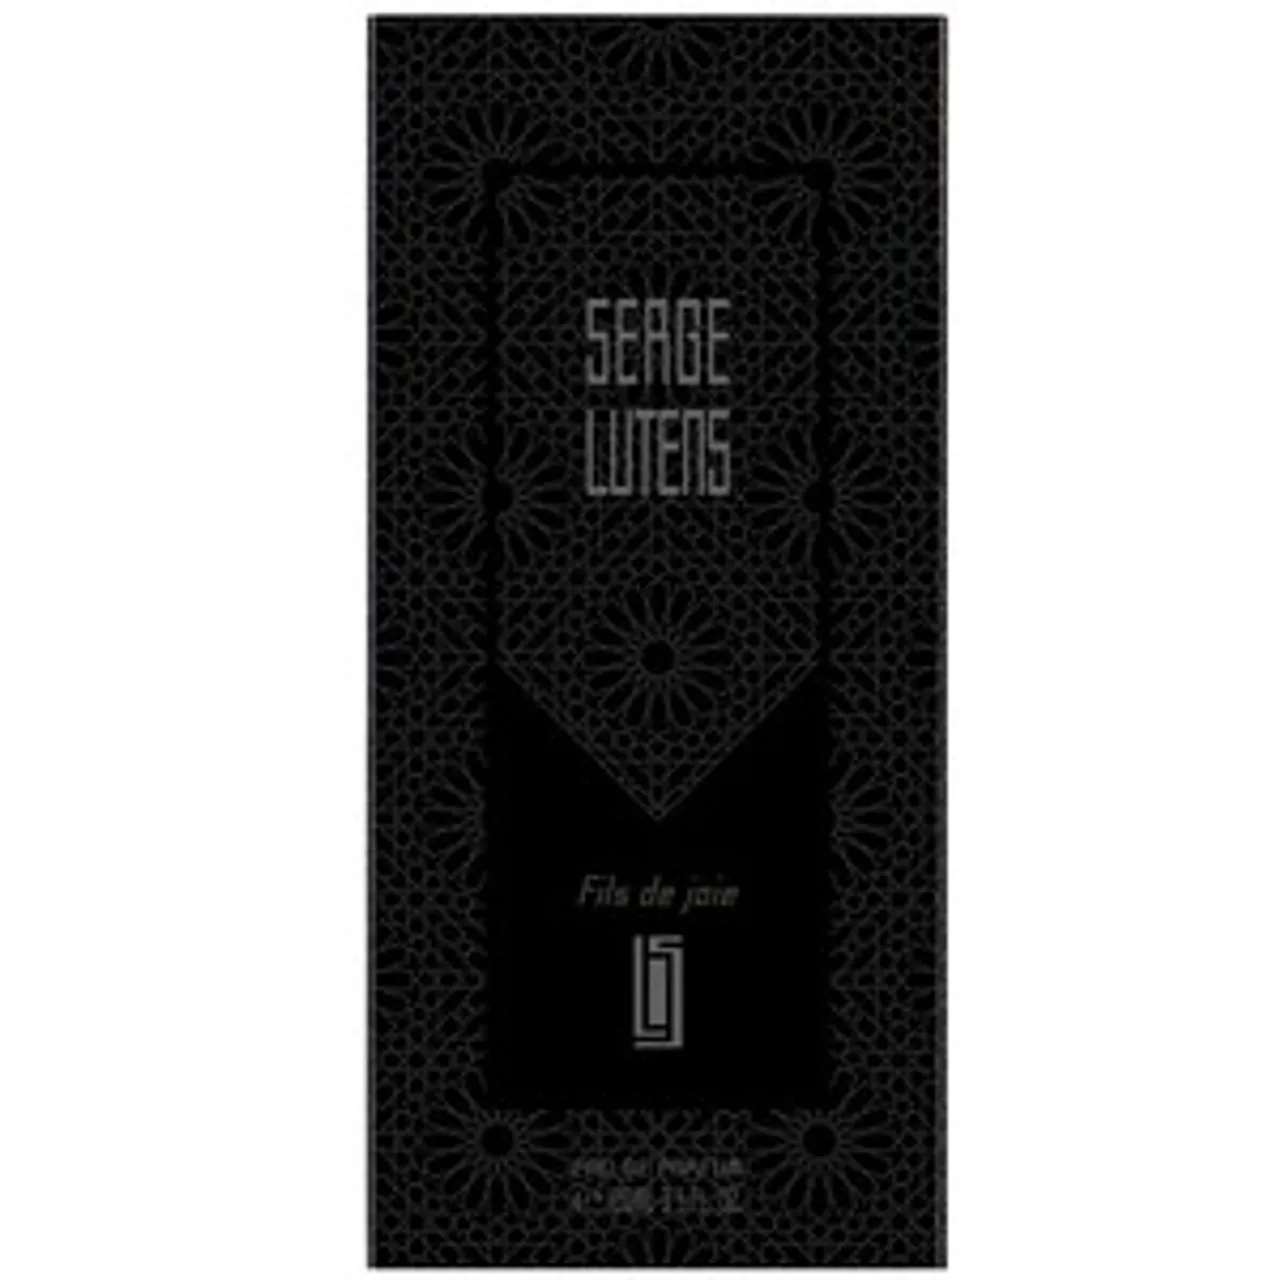 Serge Lutens Collection Noire FILS DE JOIE EAU DE PARFUM 100 ML